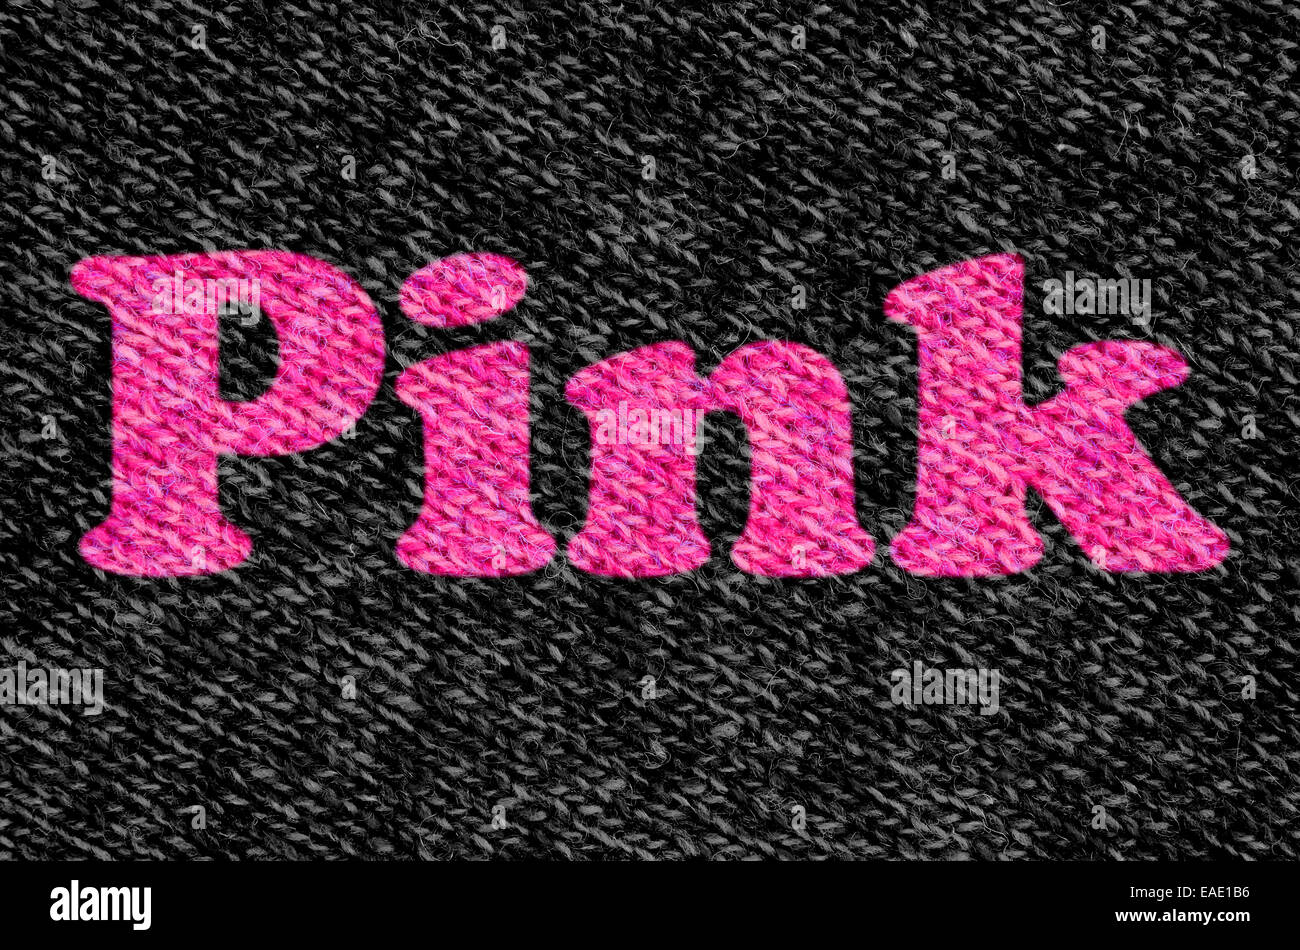 Pink On Black Wool In Die Stock Photo